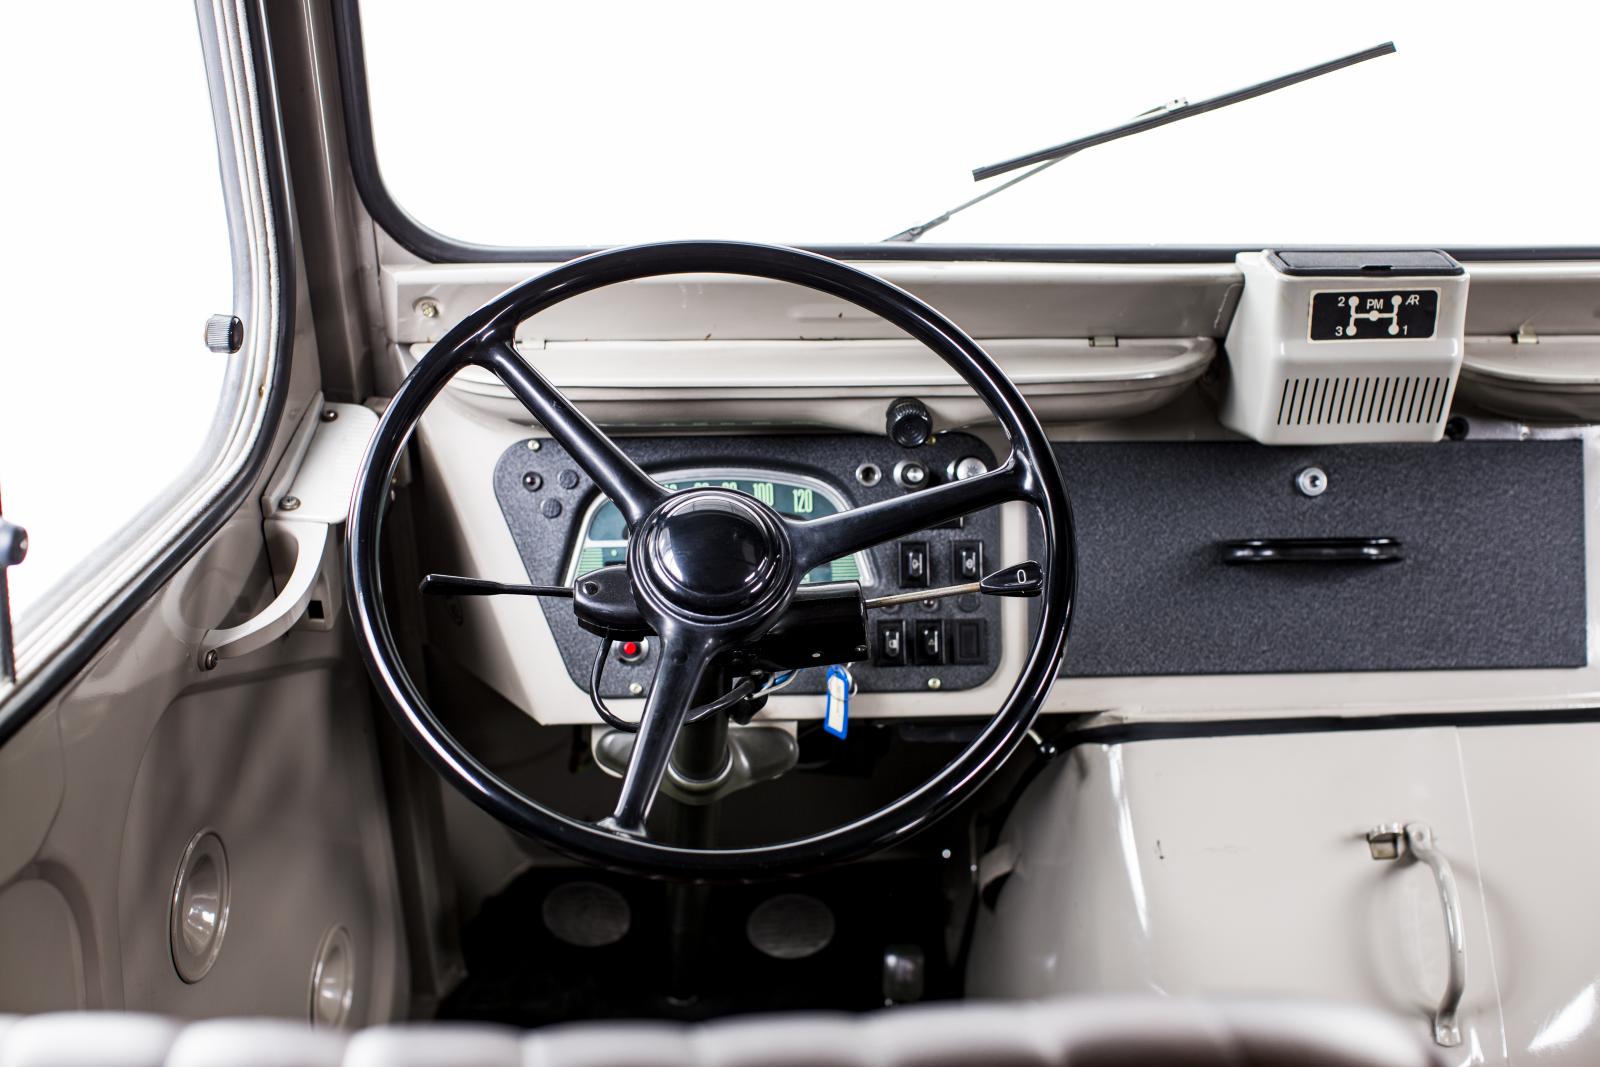 Type H steering wheel